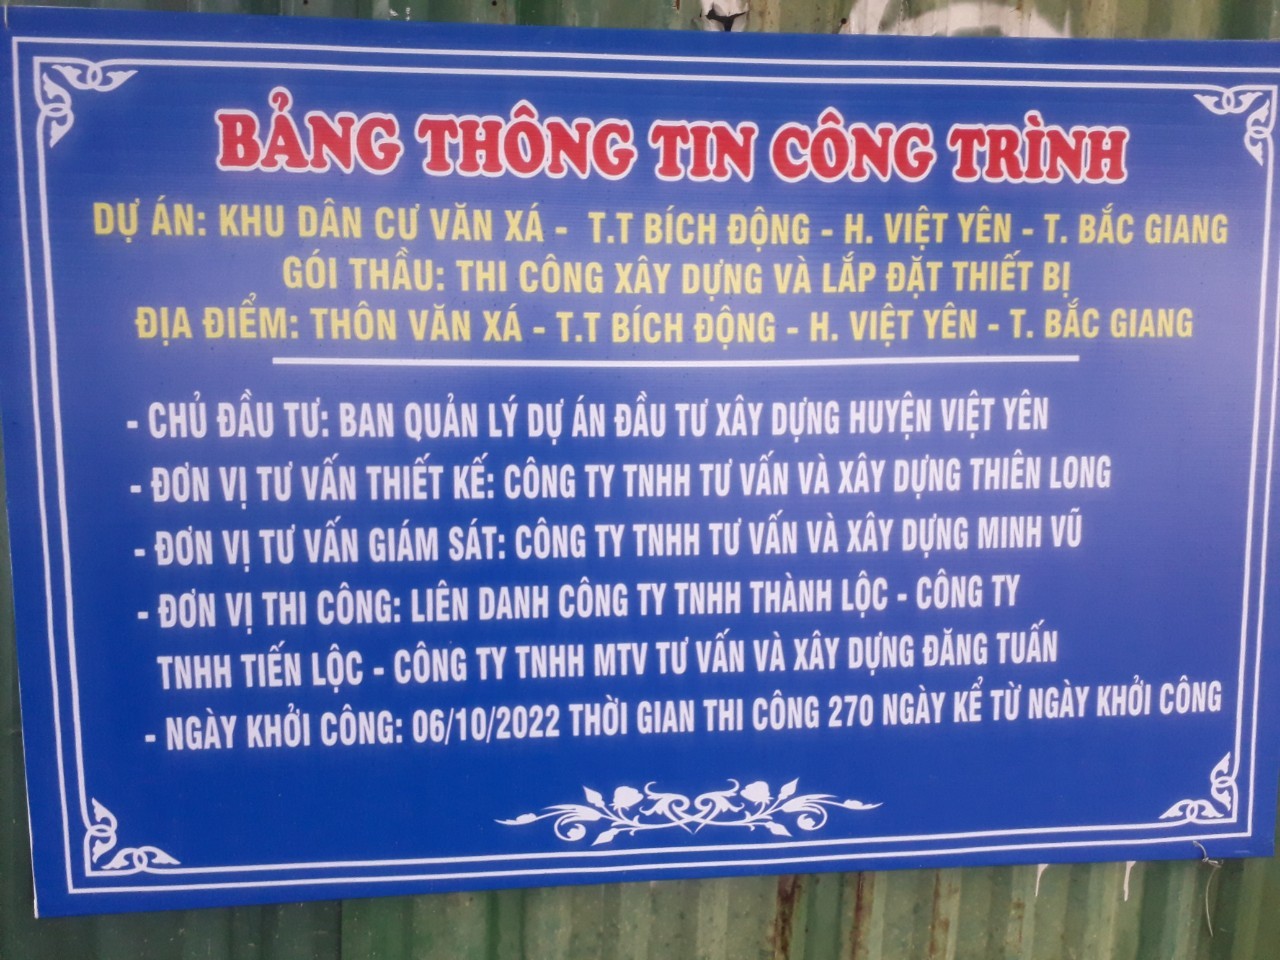 Việt Yên - Bắc Giang: Còn nhiều bất cập trong việc thu hồi, đền bù và cho thuê đất tại thị trấn Bích Động